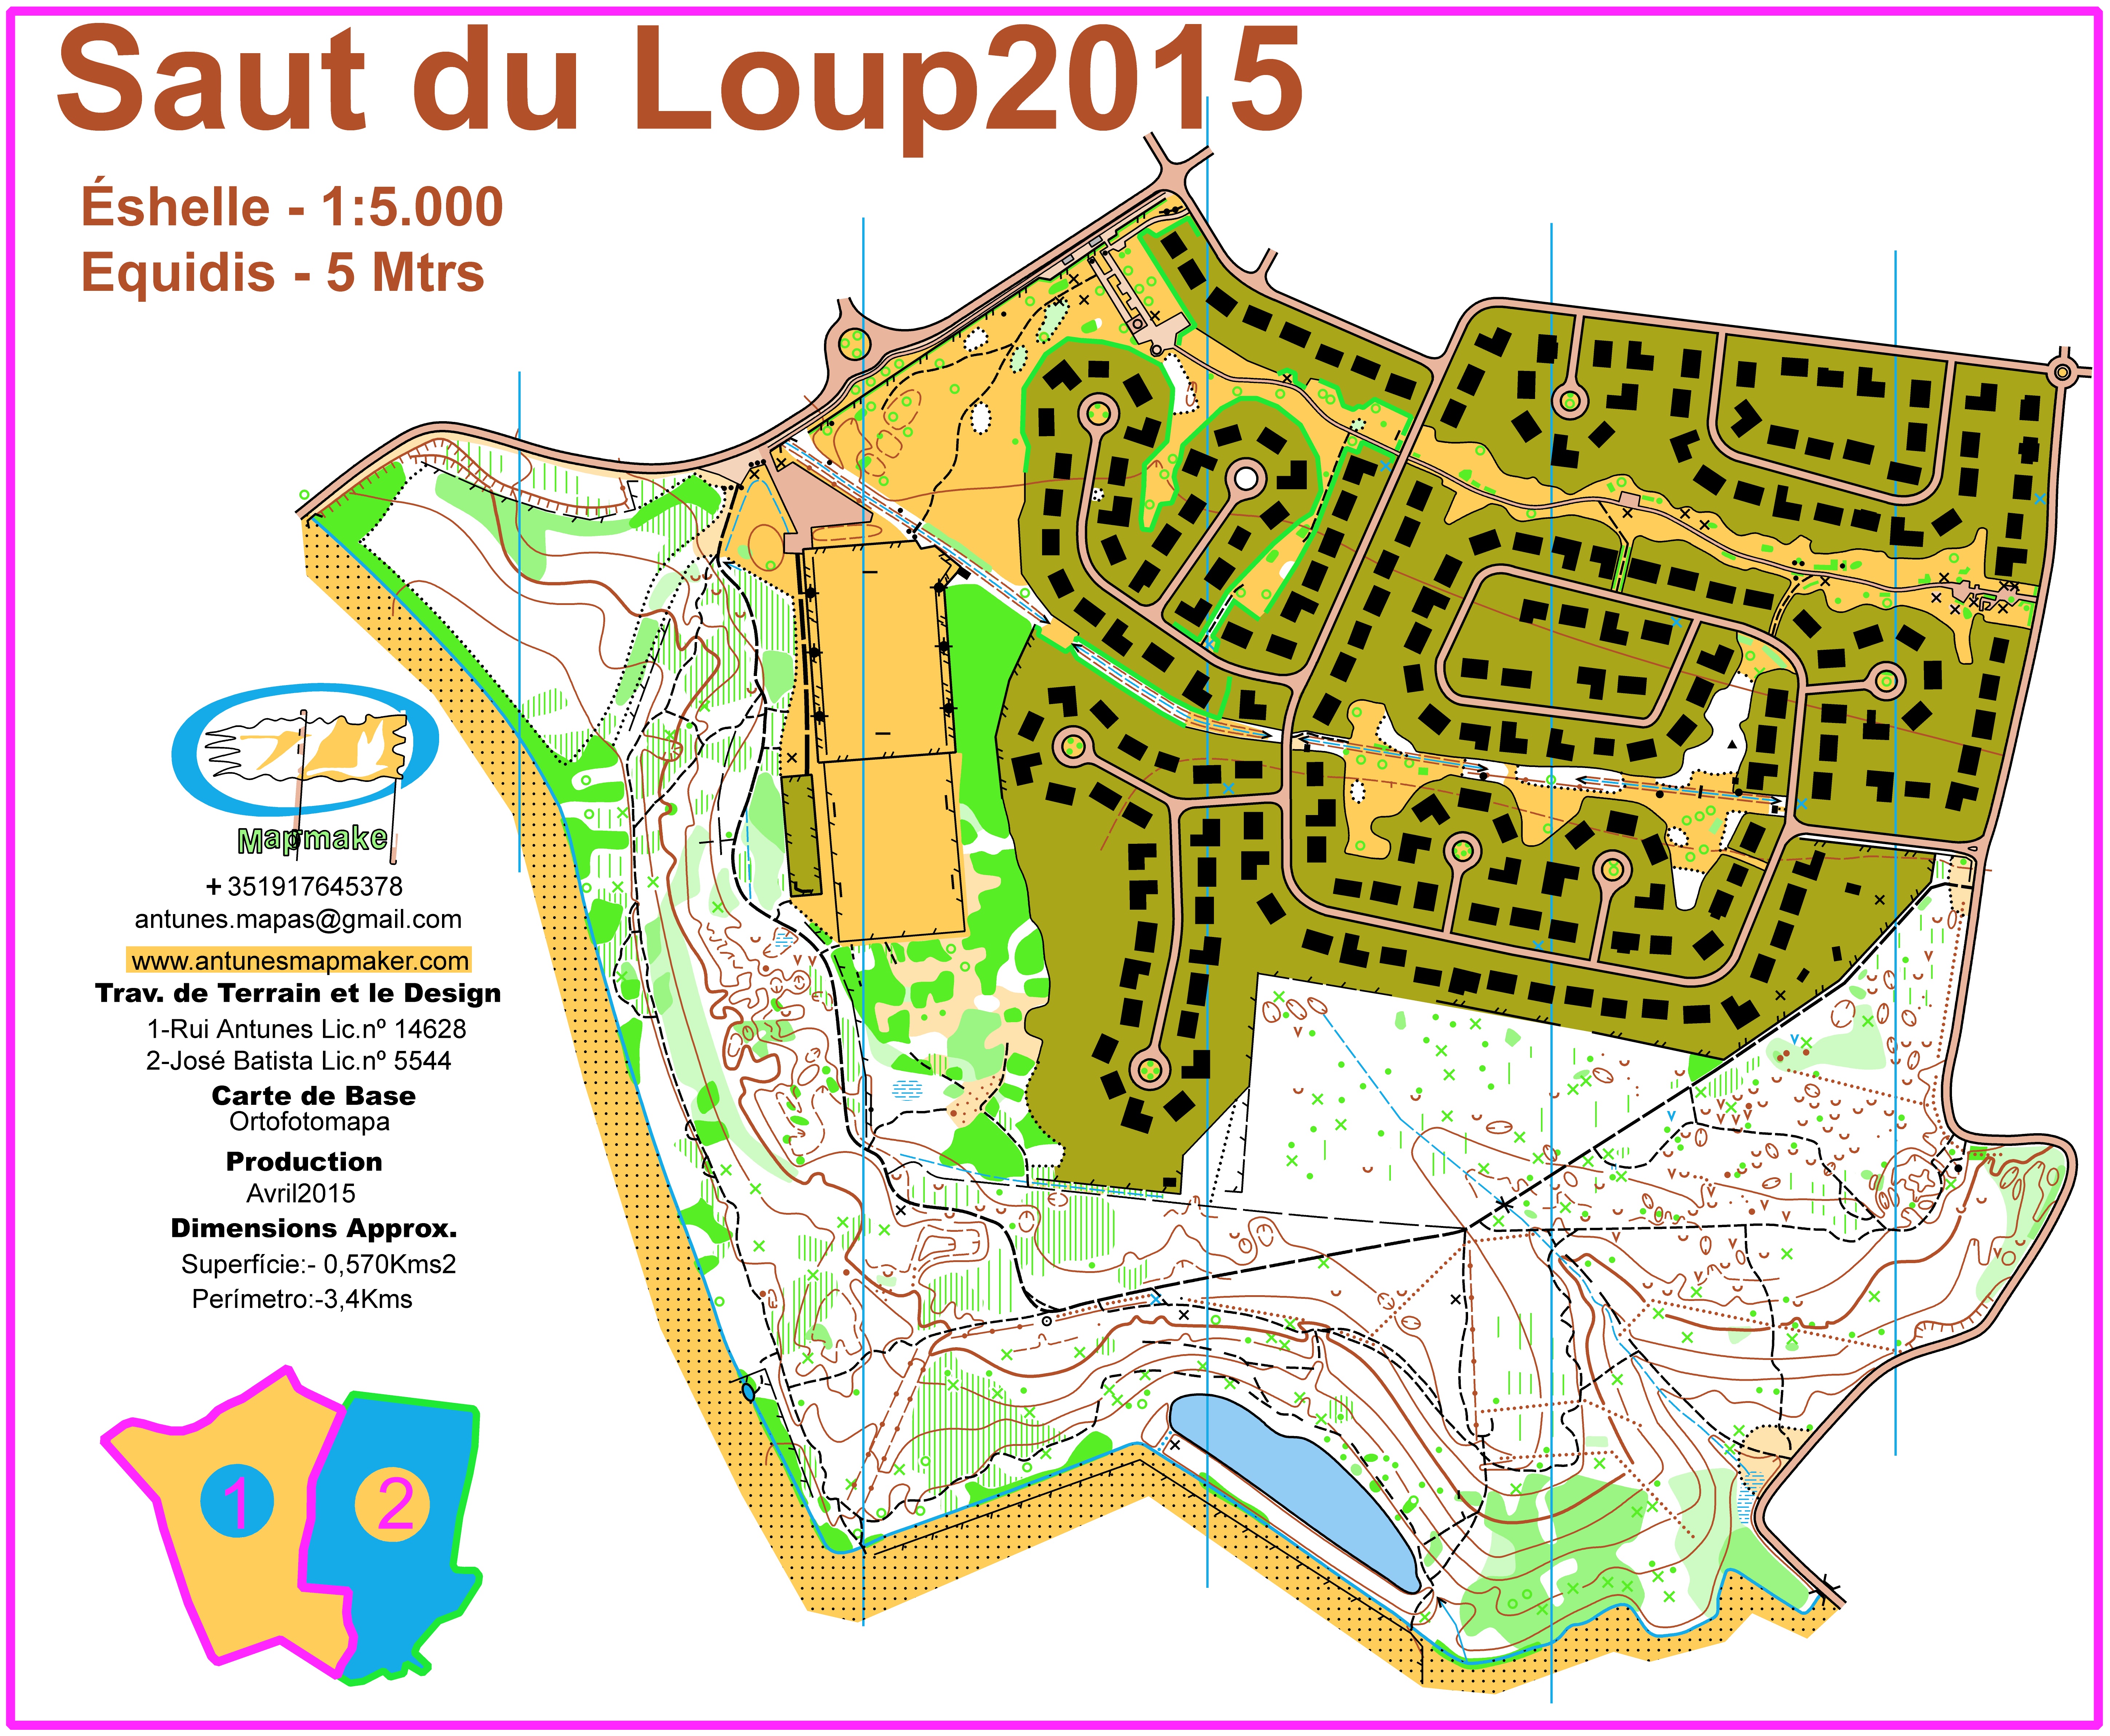 (179) - Saut du loup Map-France April2015